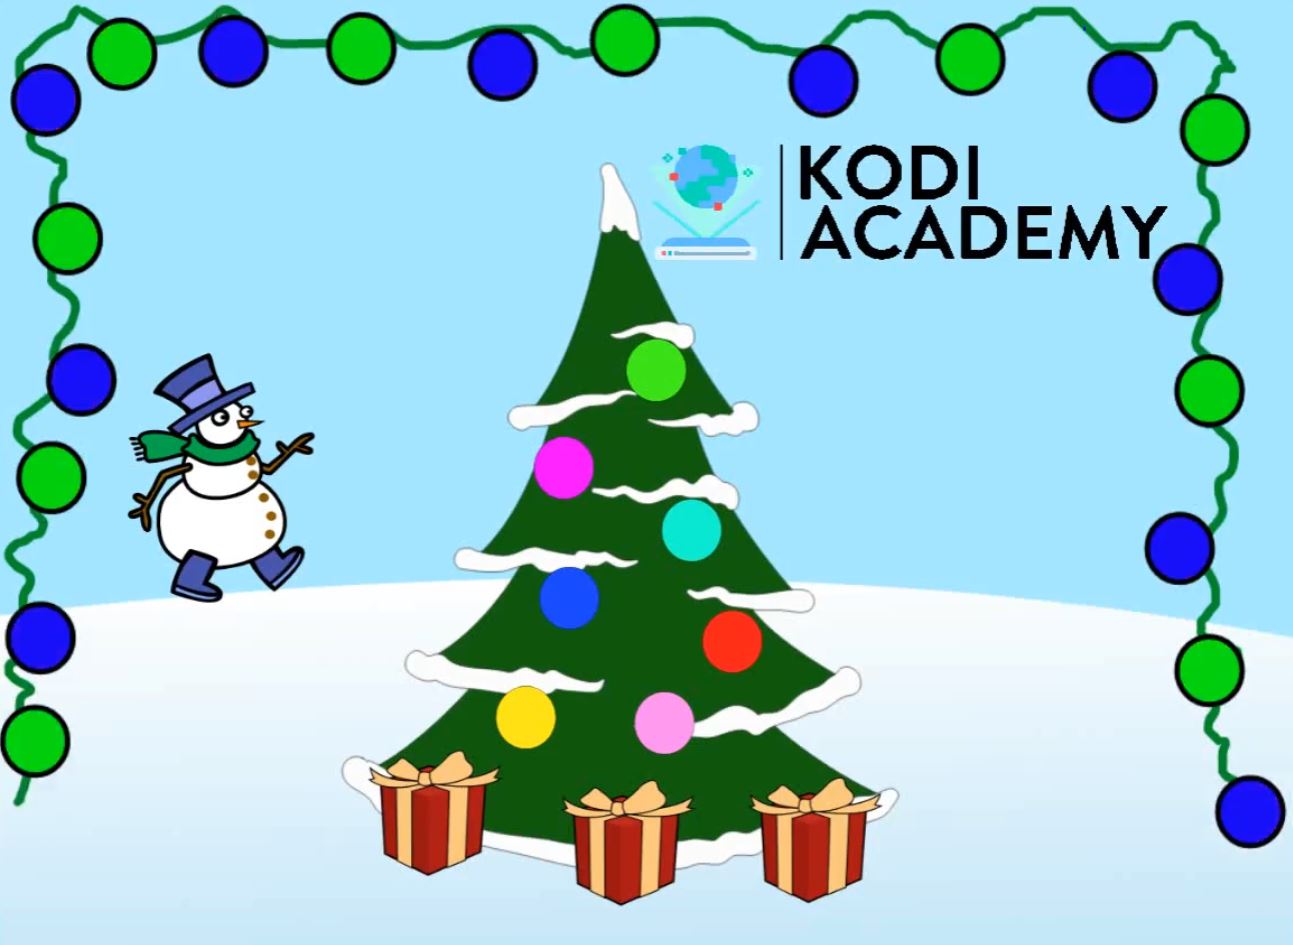 Kodi Academy